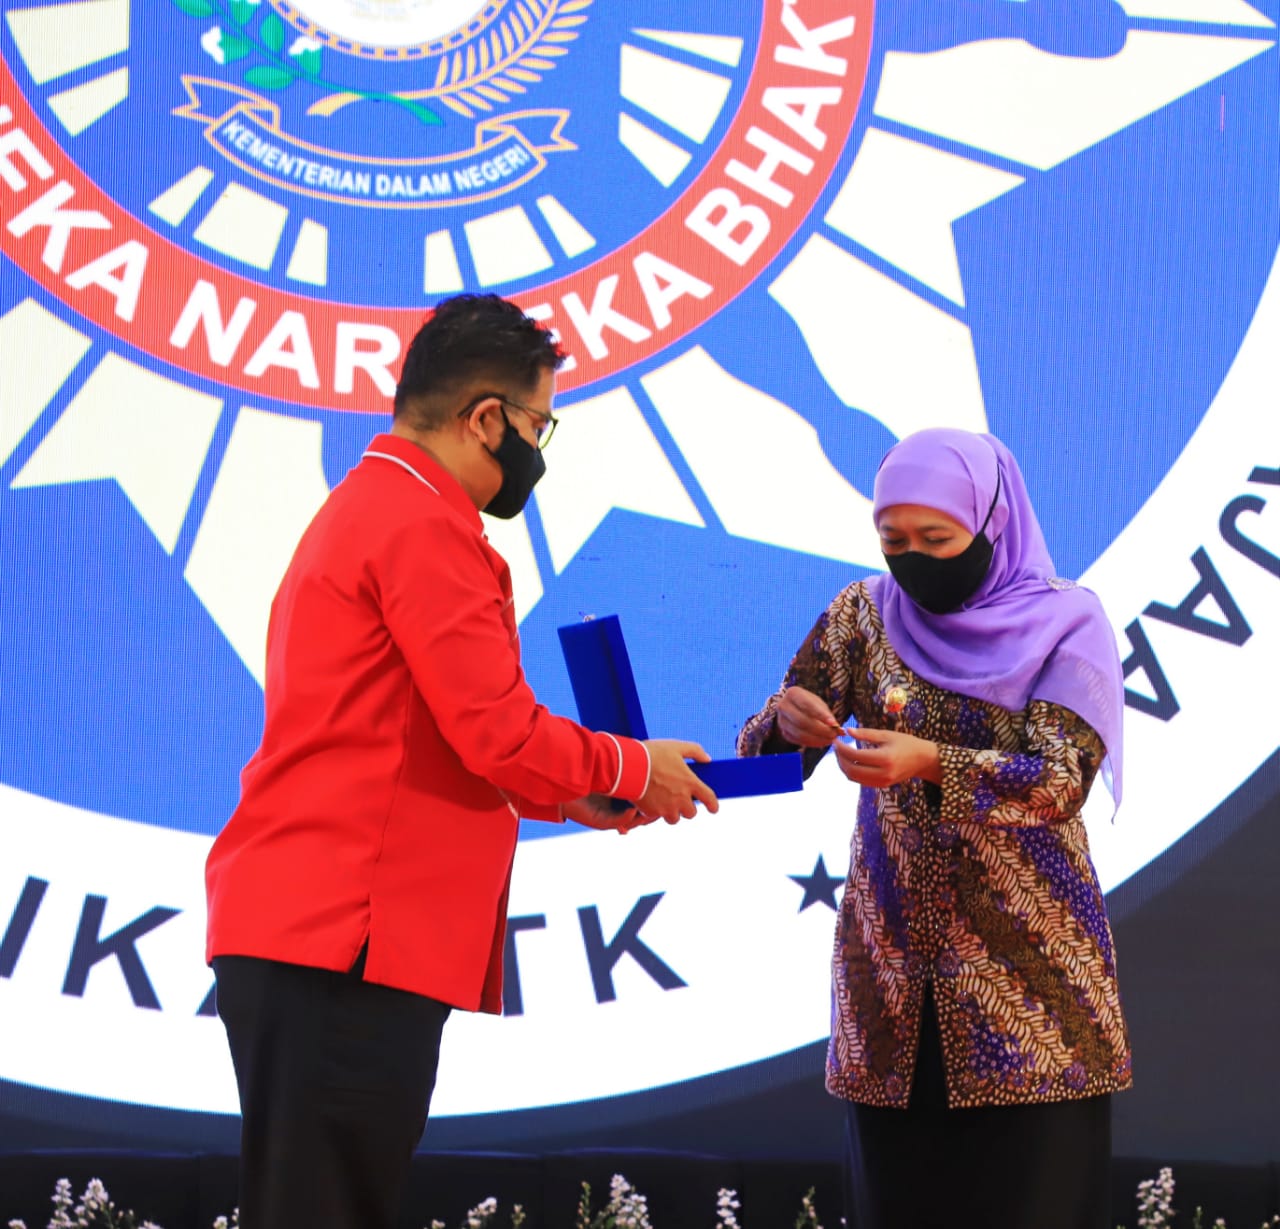 Lencana Kehormatan Asthabrata dari Ketua Umum Dewan Pimpinan Nasional Ikatan Keluarga Alumni Pendidikan Tinggi Kepamongprajaan (IKAPTK)